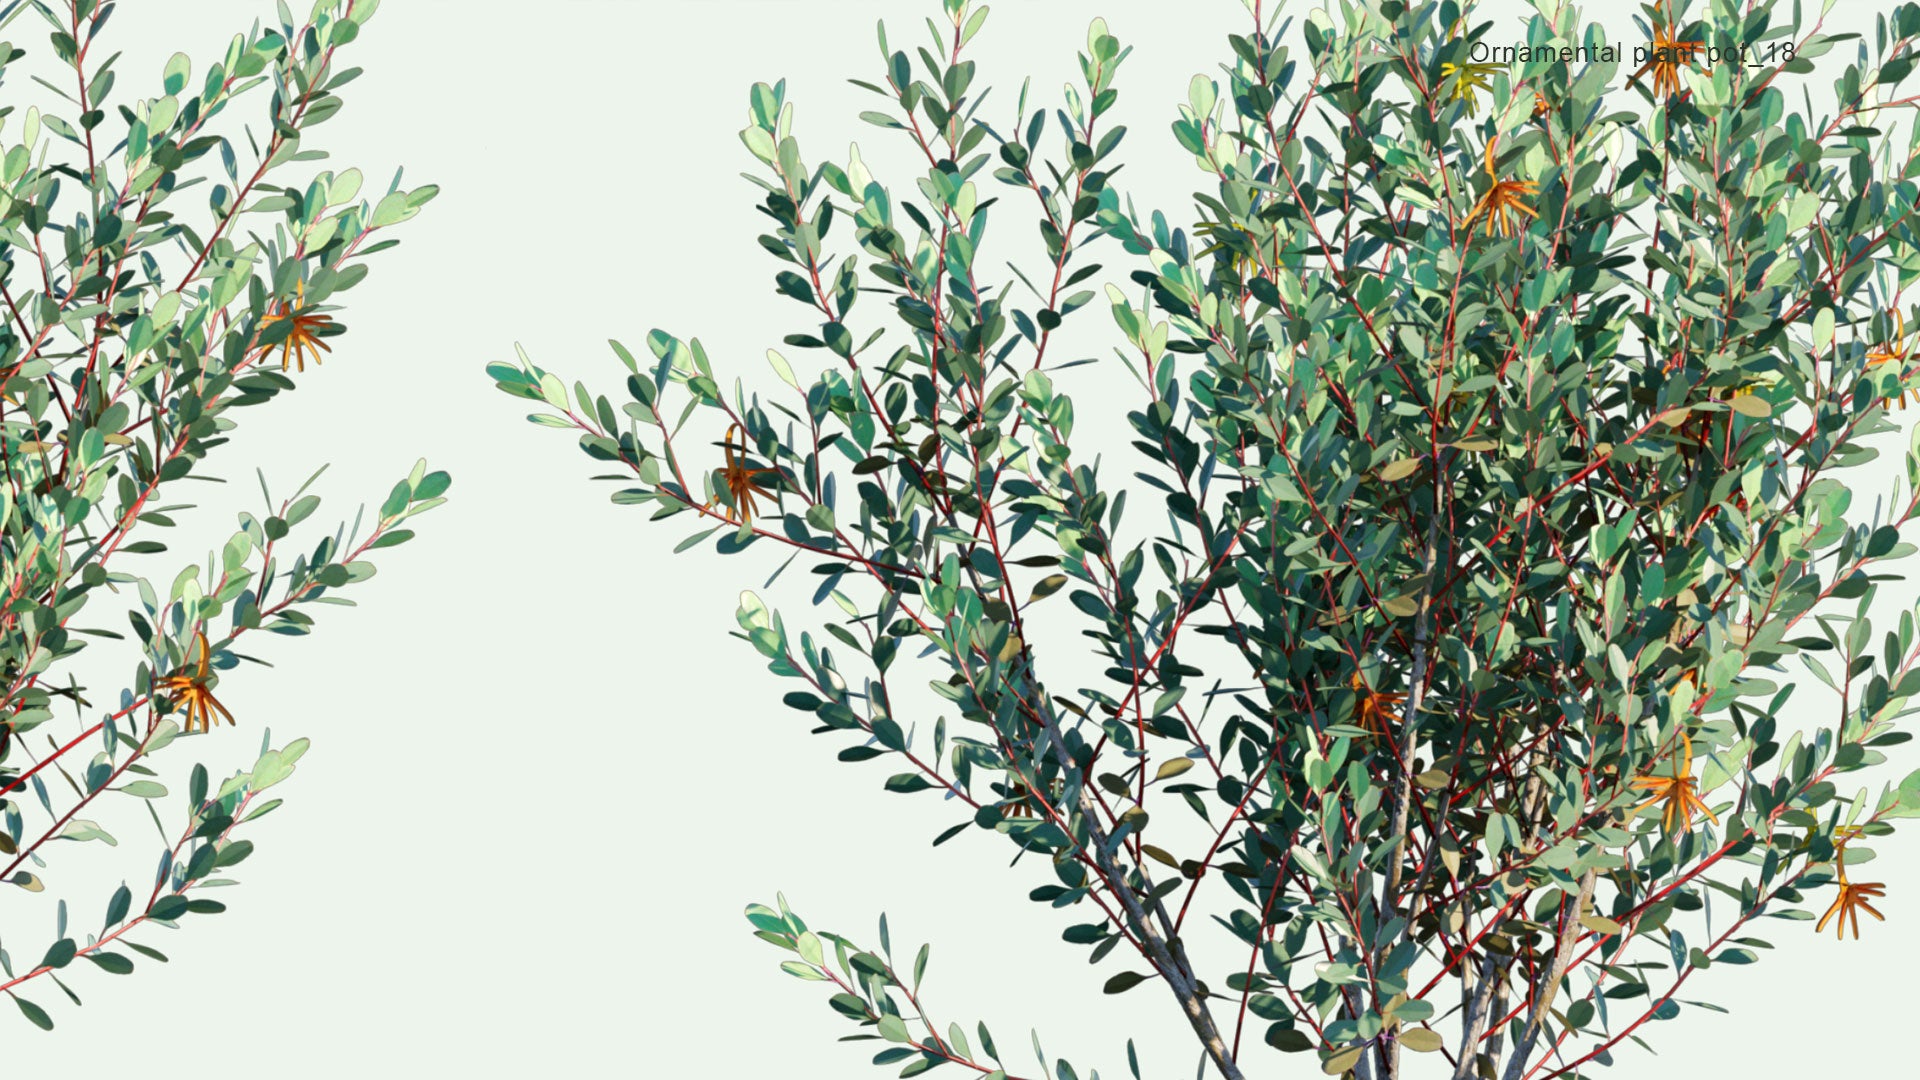 2D Ornamental Pot Plant 18 - Eucalyptus Lehmannii